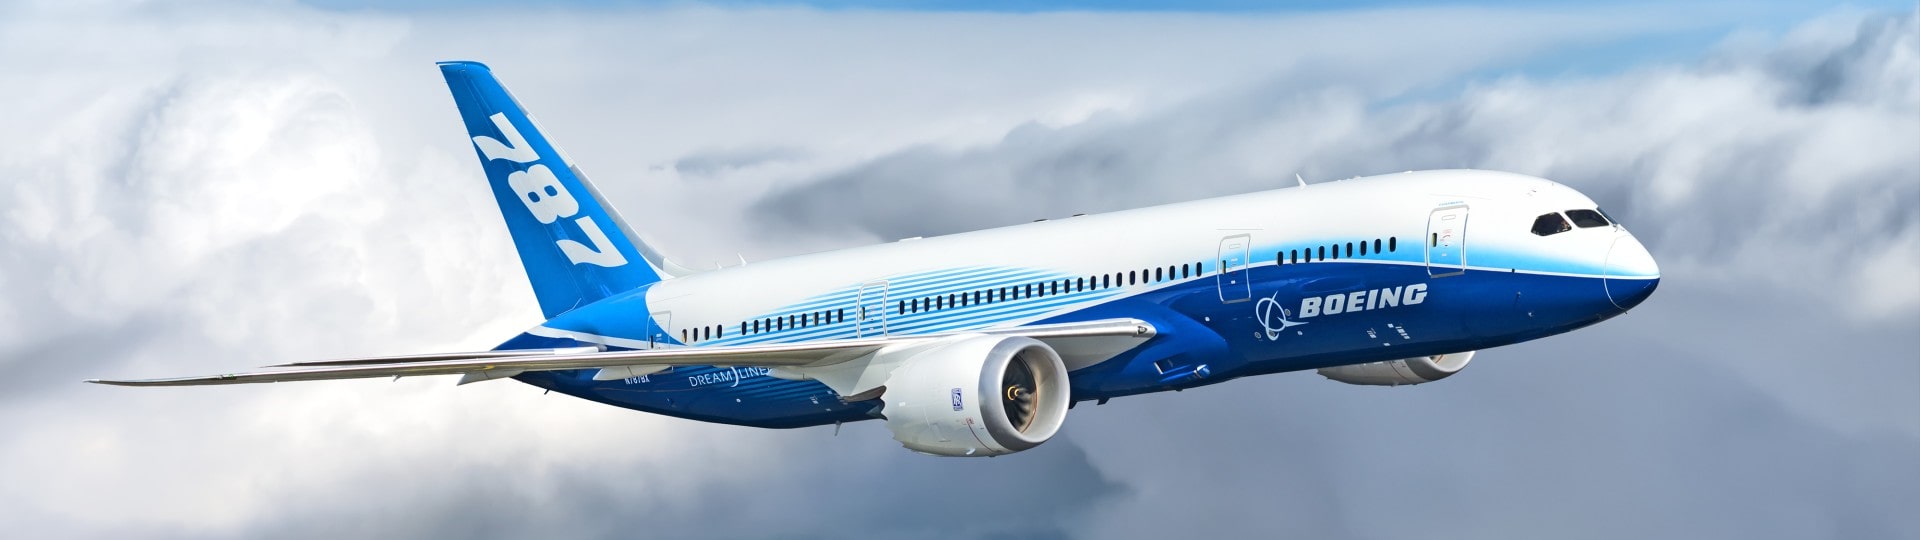 Boeing předpovídá silný růst poptávky po letadlech v jihovýchodní Asii